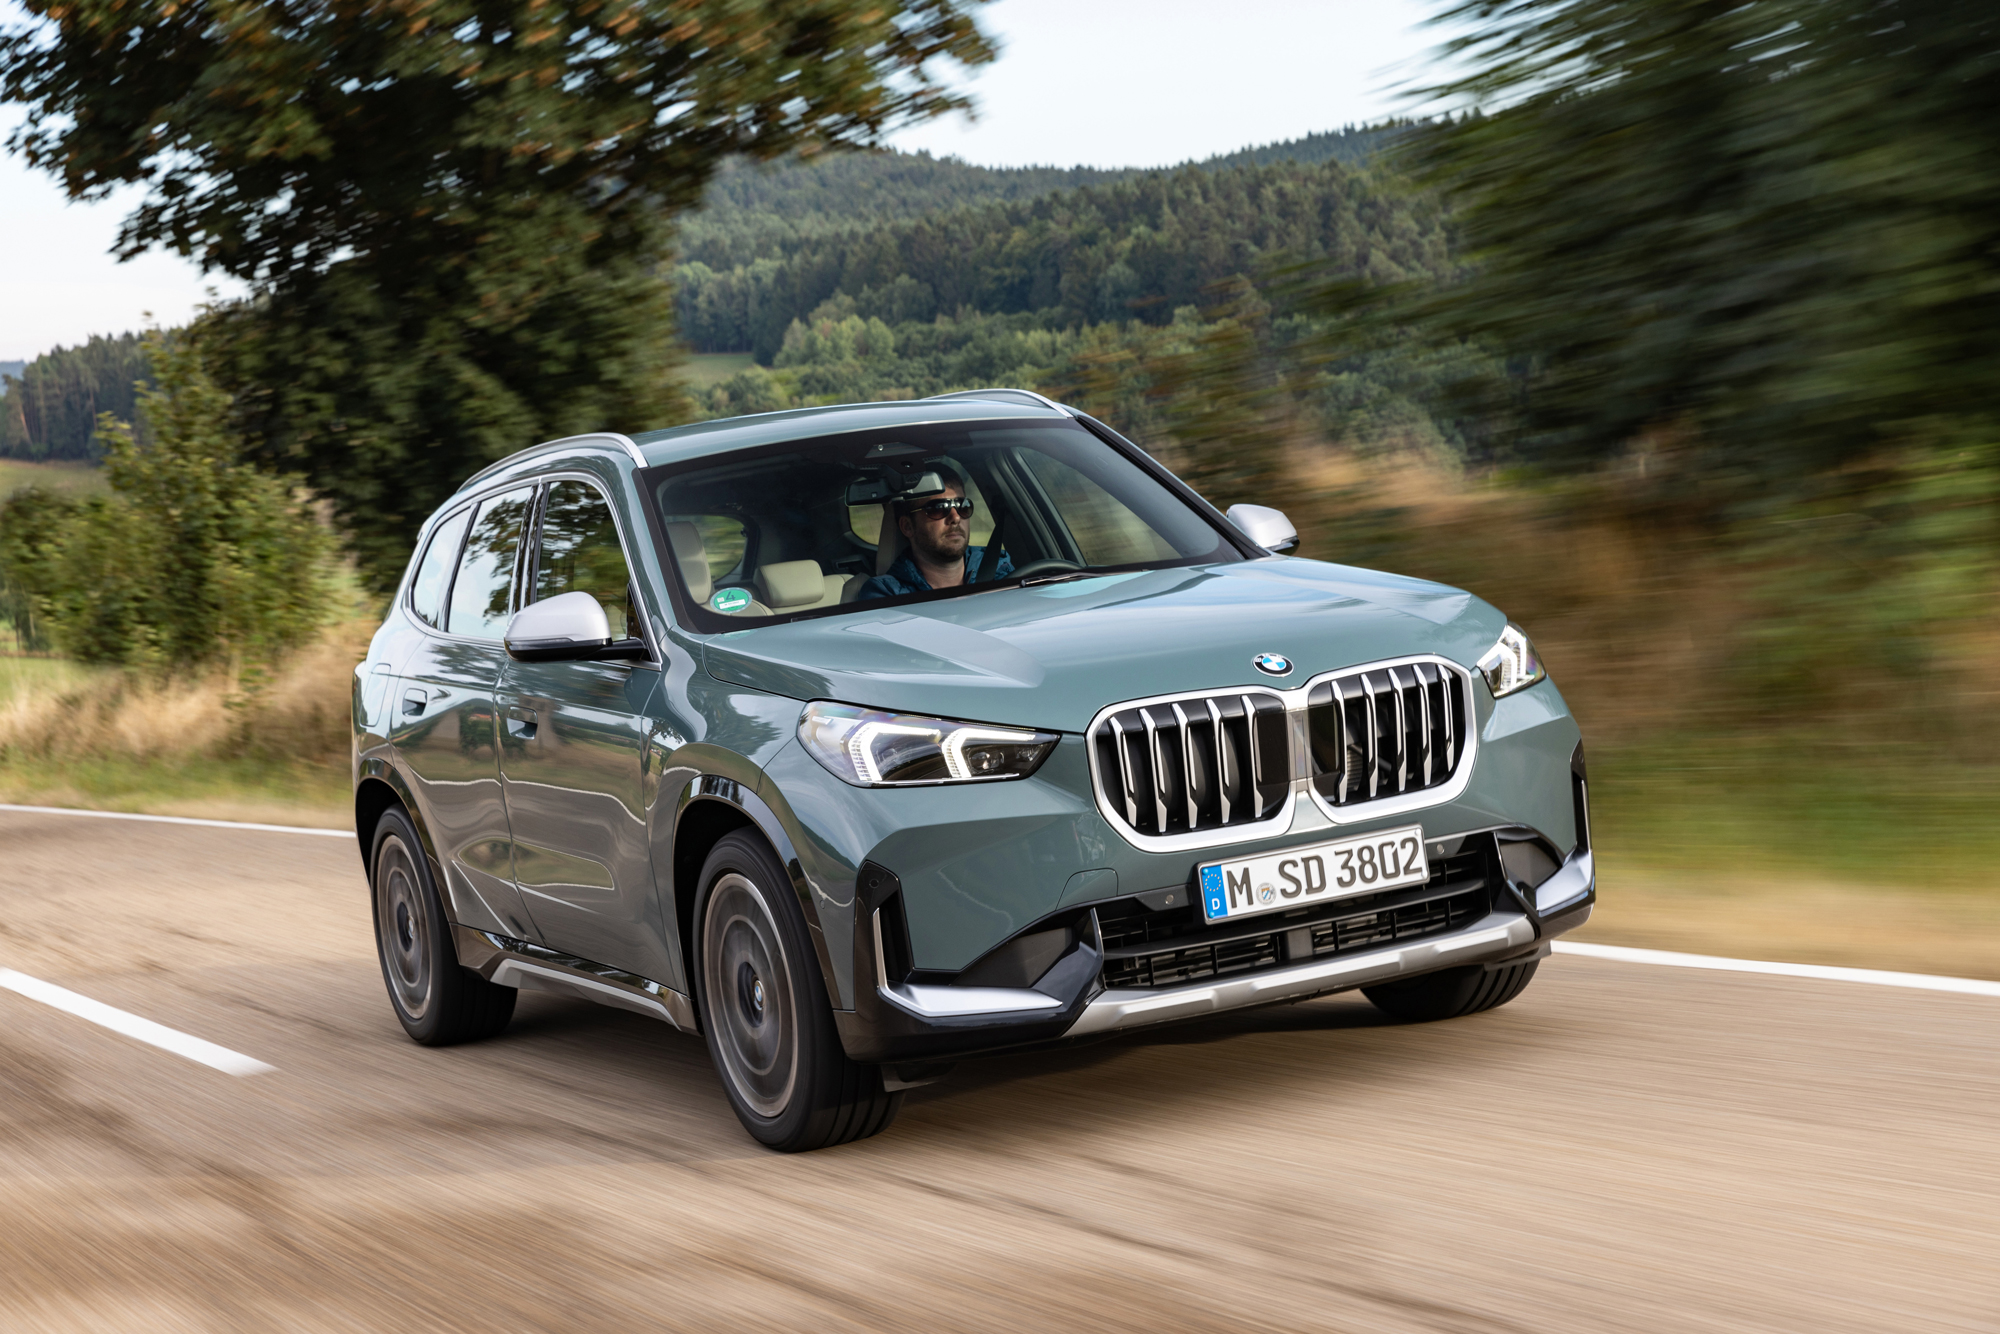 BMW X1 2021, motores, cambios y precios